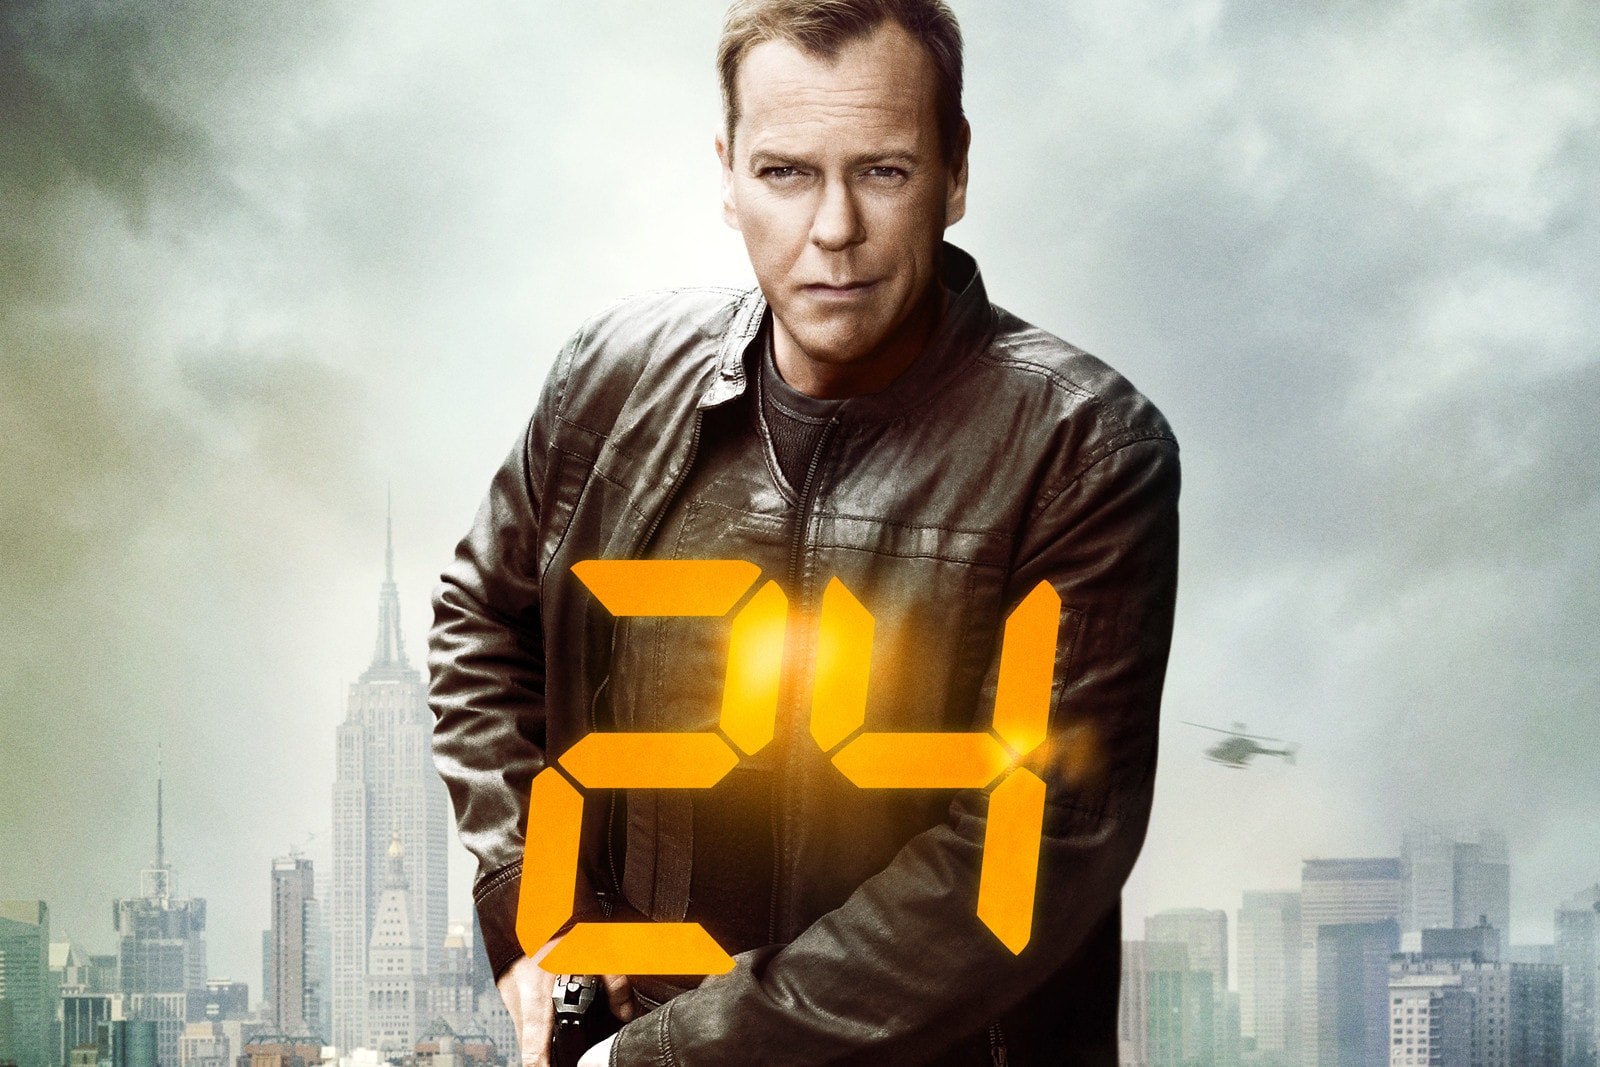 ジャック・バウアーの過去描く『24』の新作ドラマが製作決定 主演を務めるキーファー・サザーランドの起用は……？ 『24 -TWENTY FOUR-』ファンに願ってもいない朗報が舞い込んできた。「Fox」はスピンオフ作品『24: Legacy』に引き続き、主人公・Jack Bauer（ジャック・バウアー）の過去を紐解く新作を制作するようだ。『24』はアメリカの架空の連邦機関「CTU（テロ対策ユニット）」の捜査官であるJack Bauerのテロとの戦いを描く世界的人気ドラマ。待望の新シリーズはJoel Surnow（ジョエル・サーノウ）、Robert Cochran（ロバート・コクラン）という共同制作者2人が手がけるということで、ストーリーの構成にはかなりの期待ができるが、前日譚となるとJackを演じるKiefer Sutherland（キーファー・サザーランド）は実年齢的に説得力に欠けるため、起用されるかは定かになっていない。  なお、昨年11月には女性を主役にしたフランチャイズ作品の企画も明らかになっていた。果たして、Jackの前日譚ドラマはいつ公開を迎えることになるのだろうか。続報に期待したい。  ちなみに、『ストレンジャー・シングス』シーズン3の配信時期に関する新情報についてはすでにご存知？